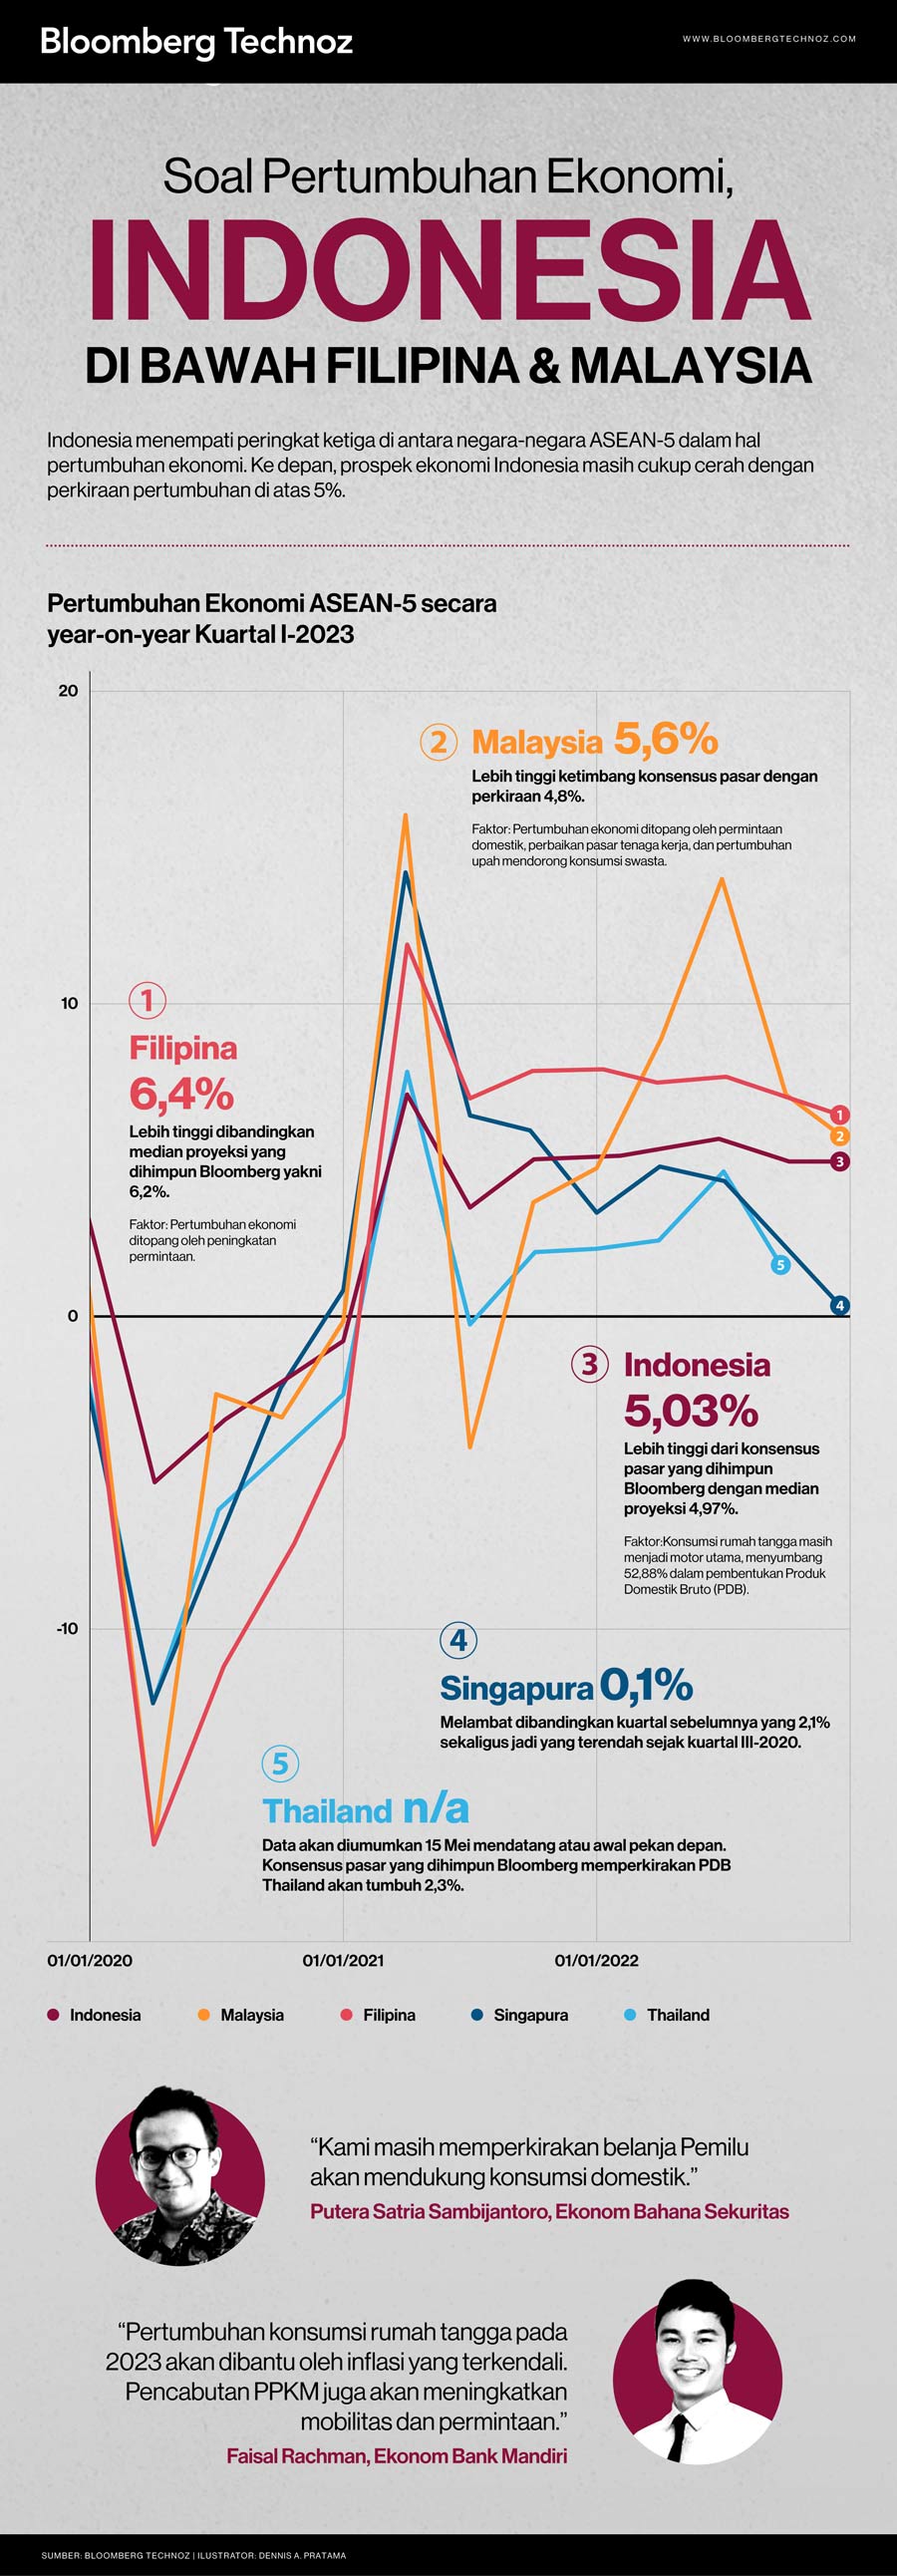 Soal Pertumbuhan Ekonomi, Indonesia di Bawah Filipina & Malaysia (Infografis/Bloomberg Technoz)